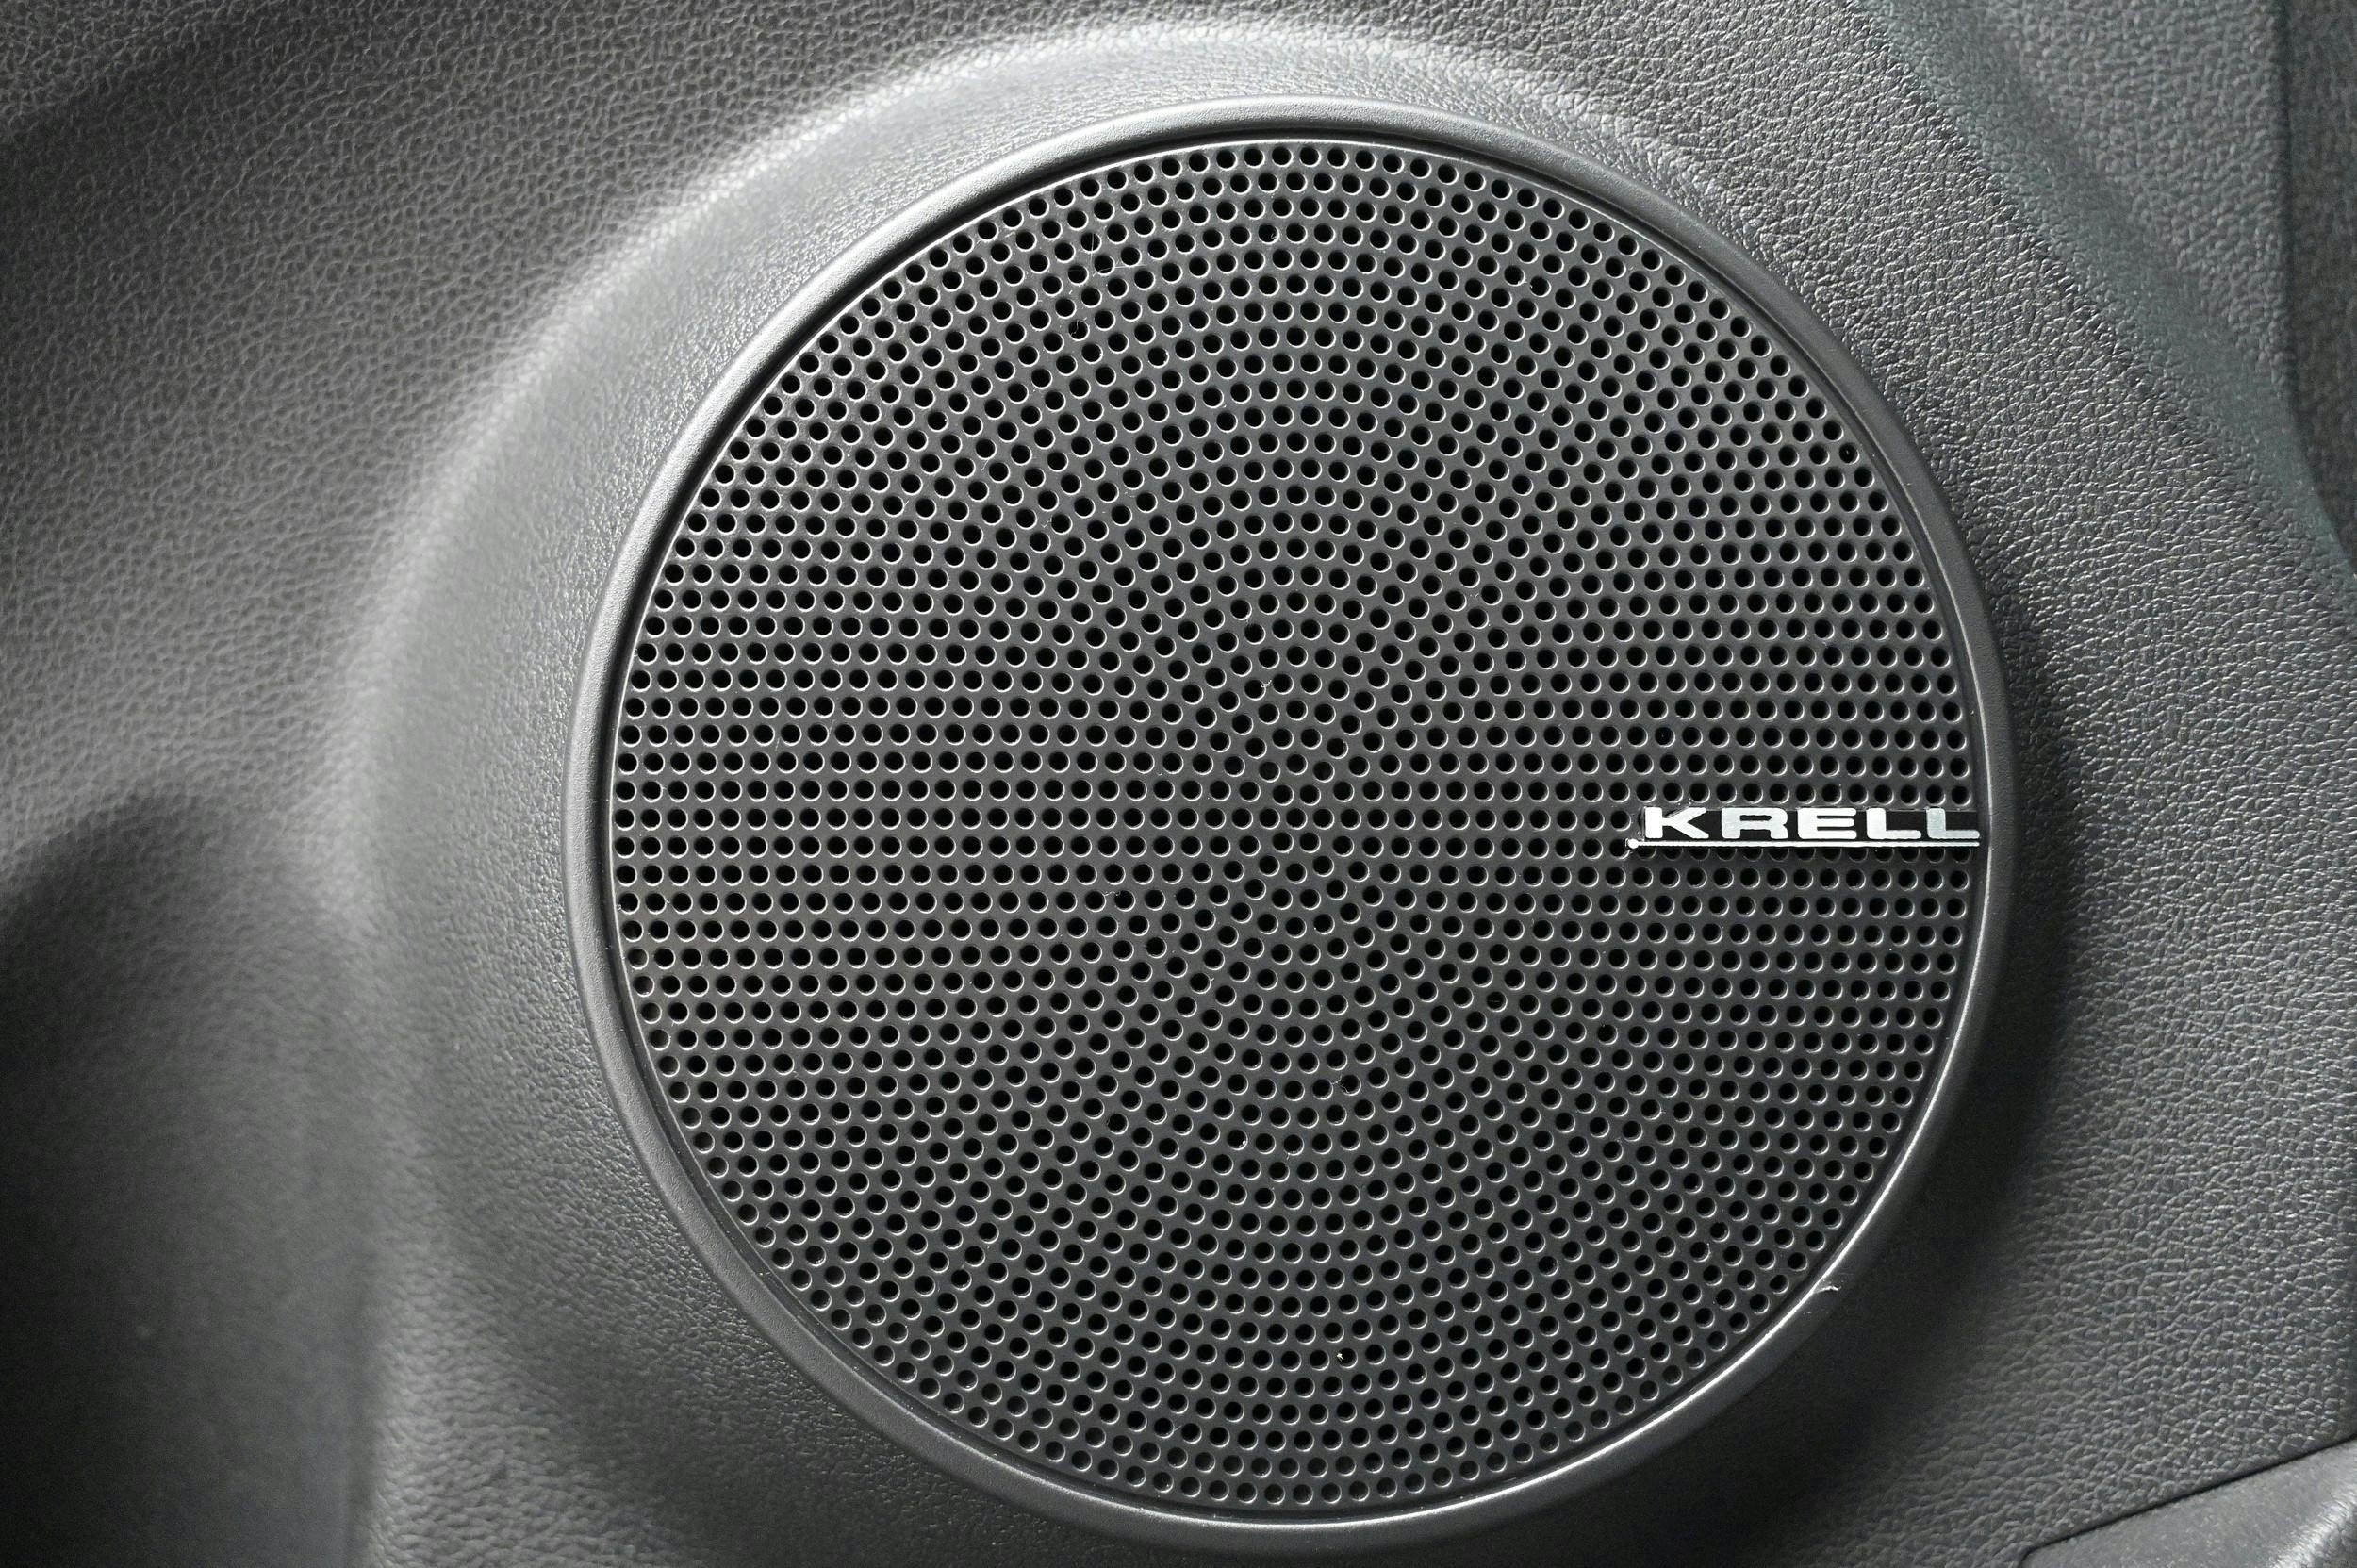 KRELL, uppgraderat ljudsystem med 8 högtalare inkl centerhögtalare och subwoofer